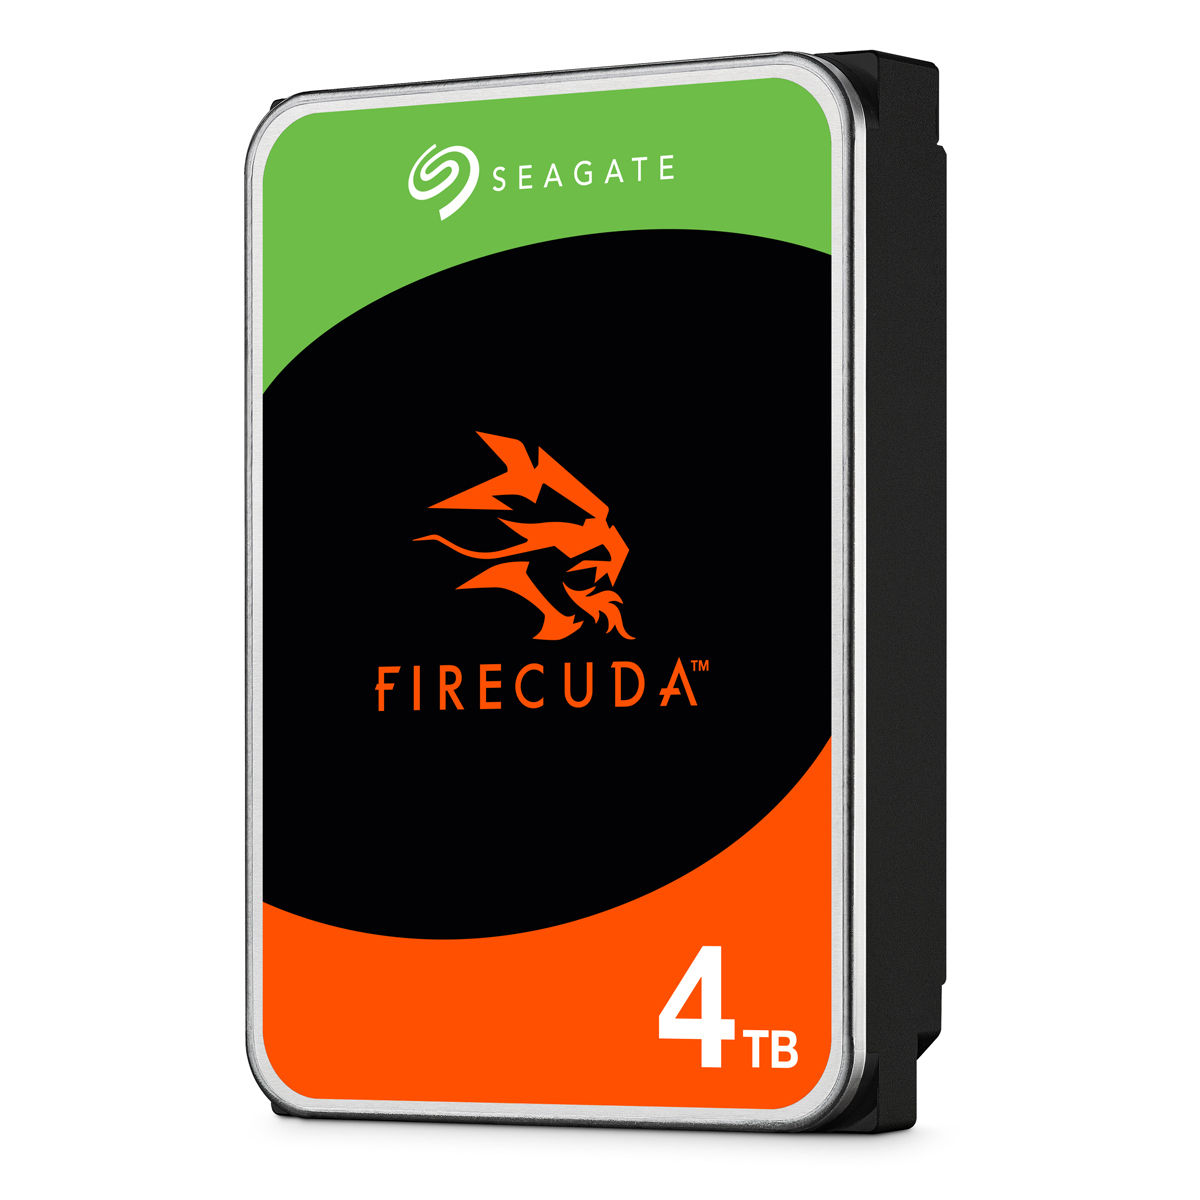 Seagate FireCuda 4TB 3.5 Zoll SATA 6Gb/s + Rescue - interne CMR Gaming Festplatte von Seagate